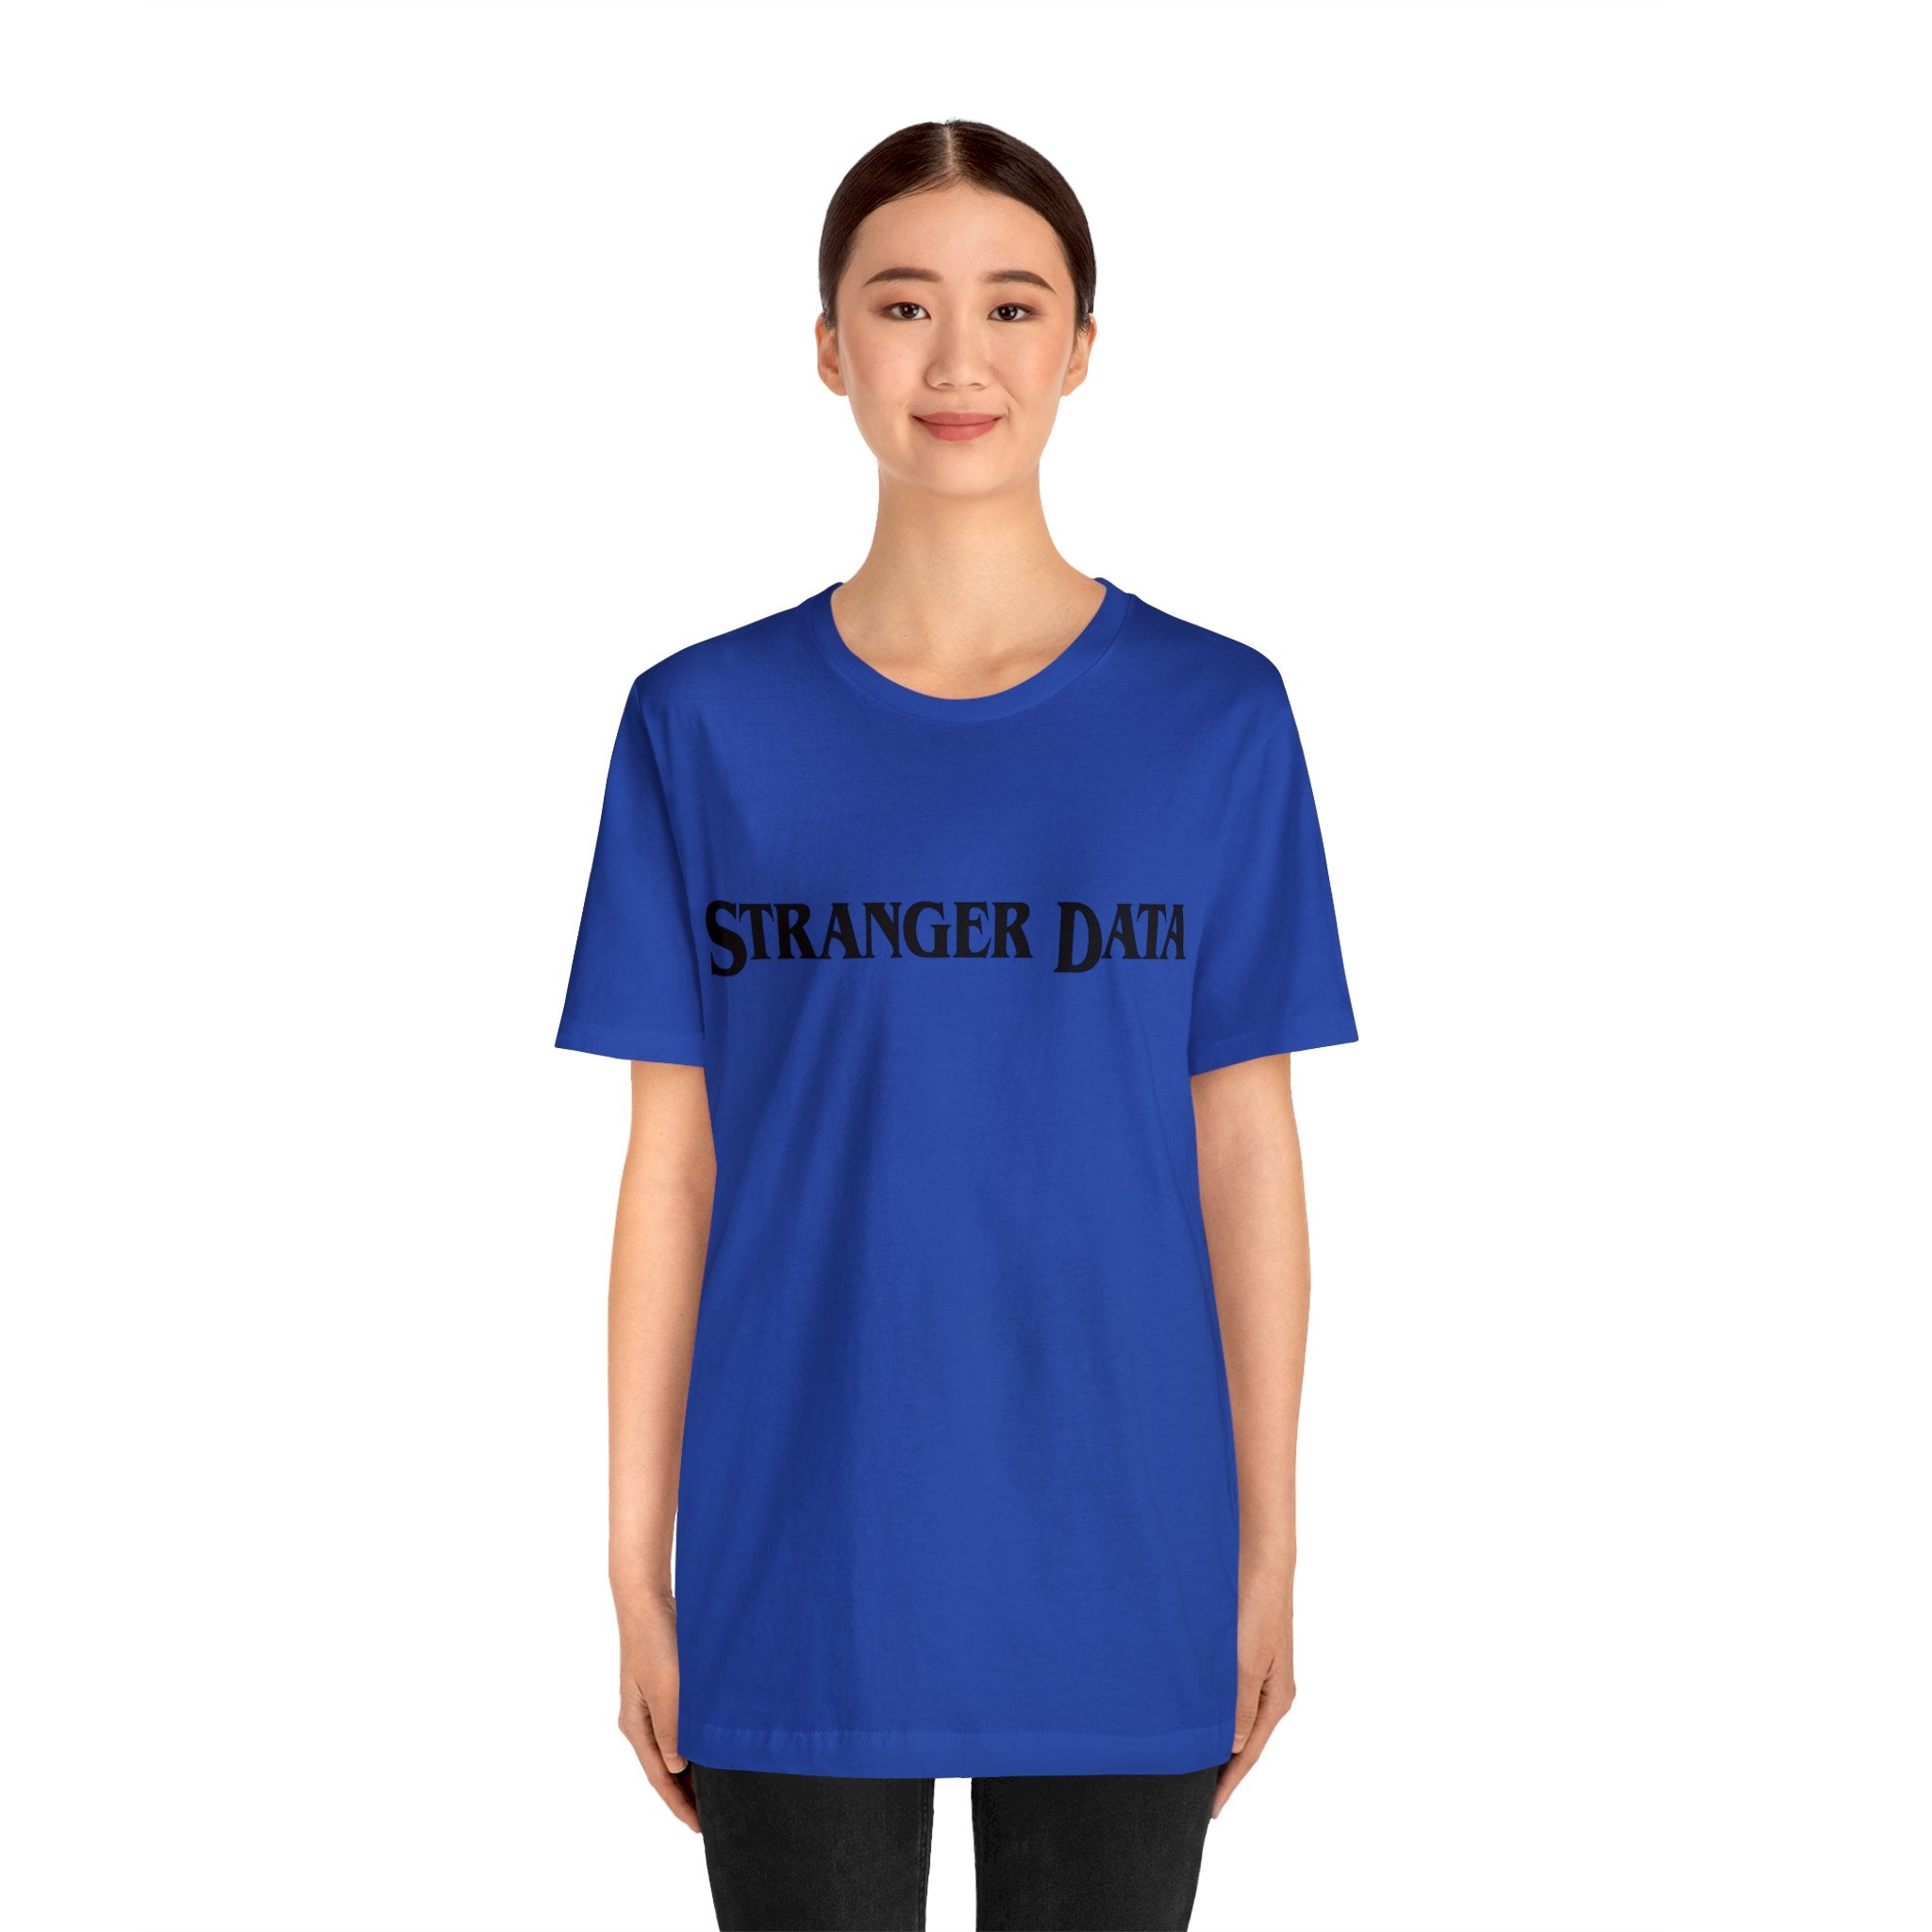 Stranger Data Tee Shirt